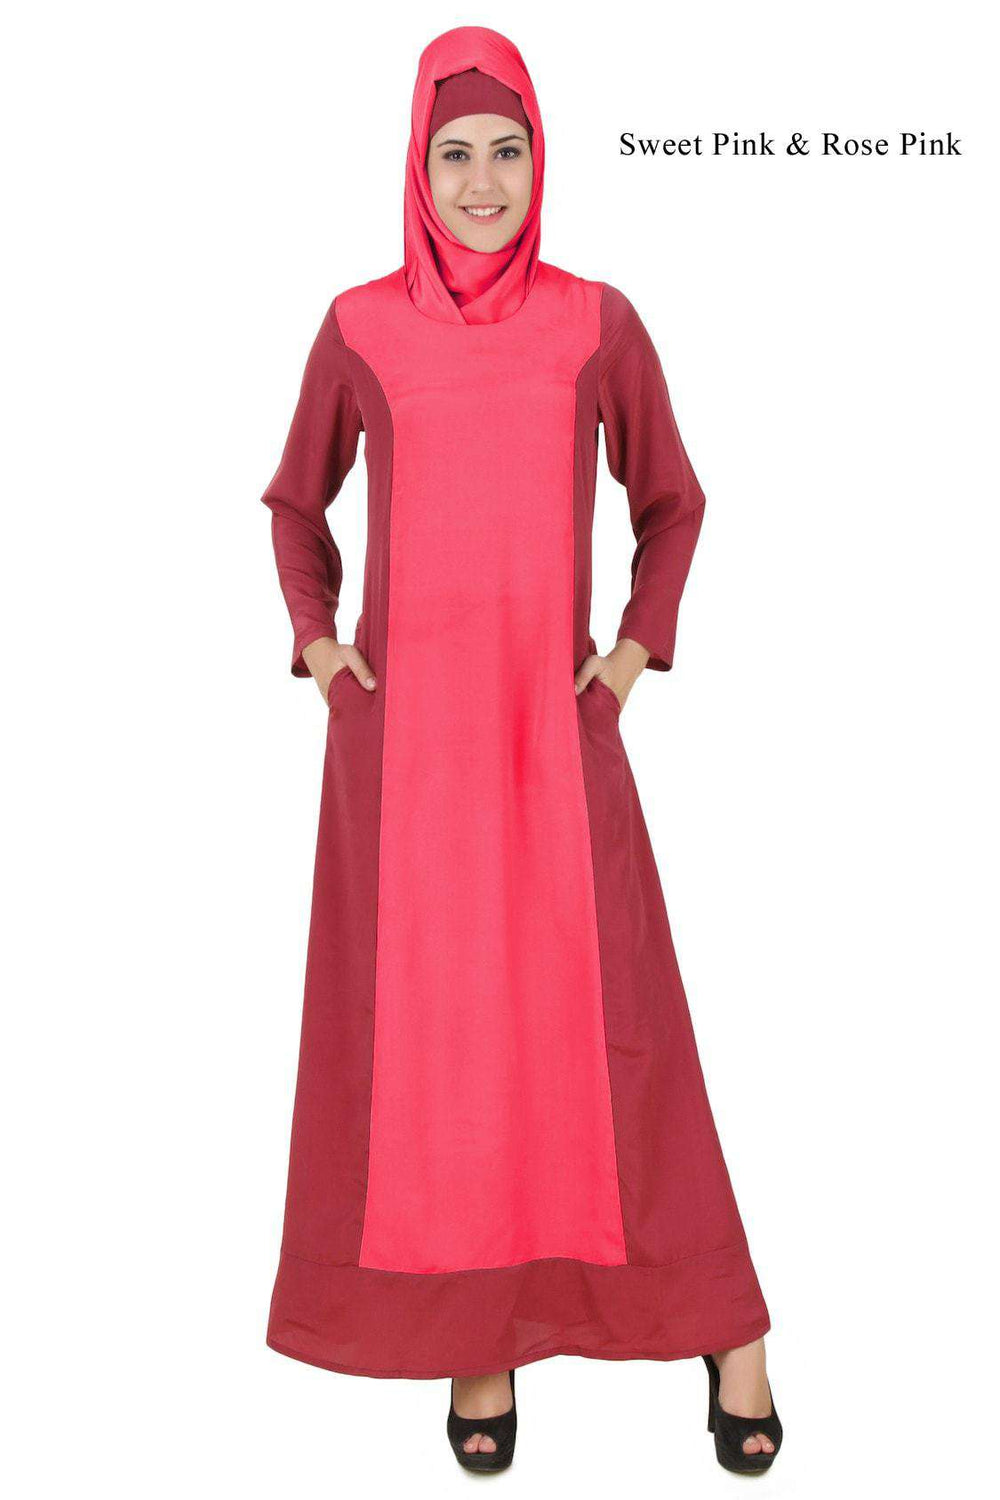 Arshi Slim Look Sweet Pink & Rose Pink Abaya